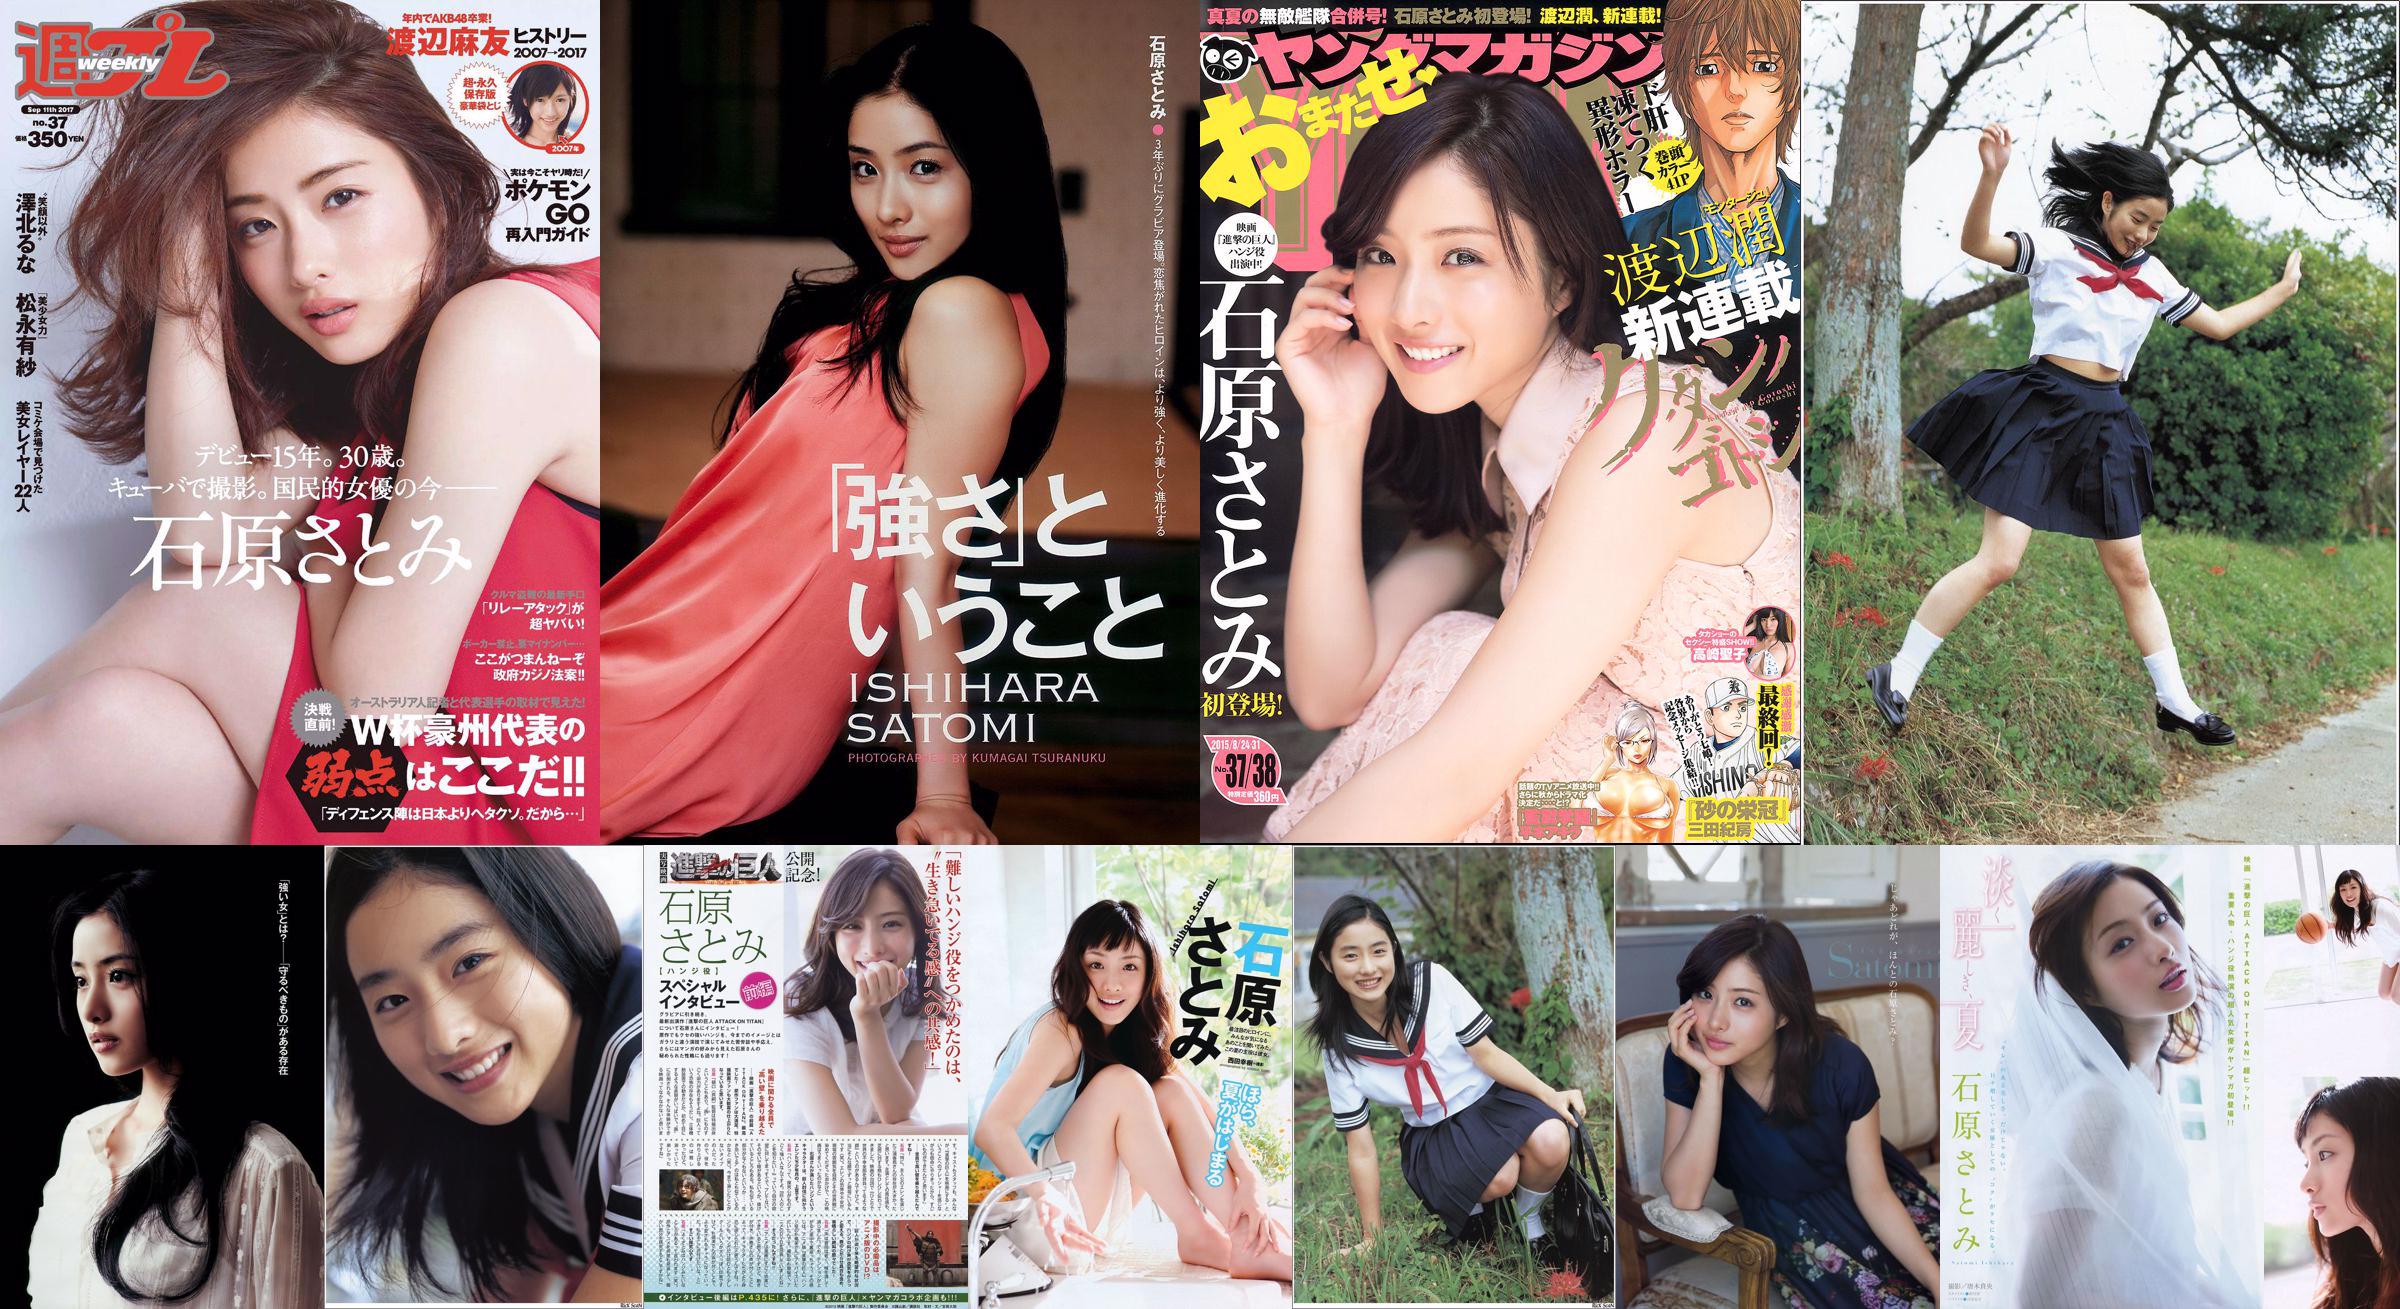 [Revista Young] Ishihara さとみ Takasaki Seiko 2015 No.37-38 Photo Magazine No.fd8a84 Página 1